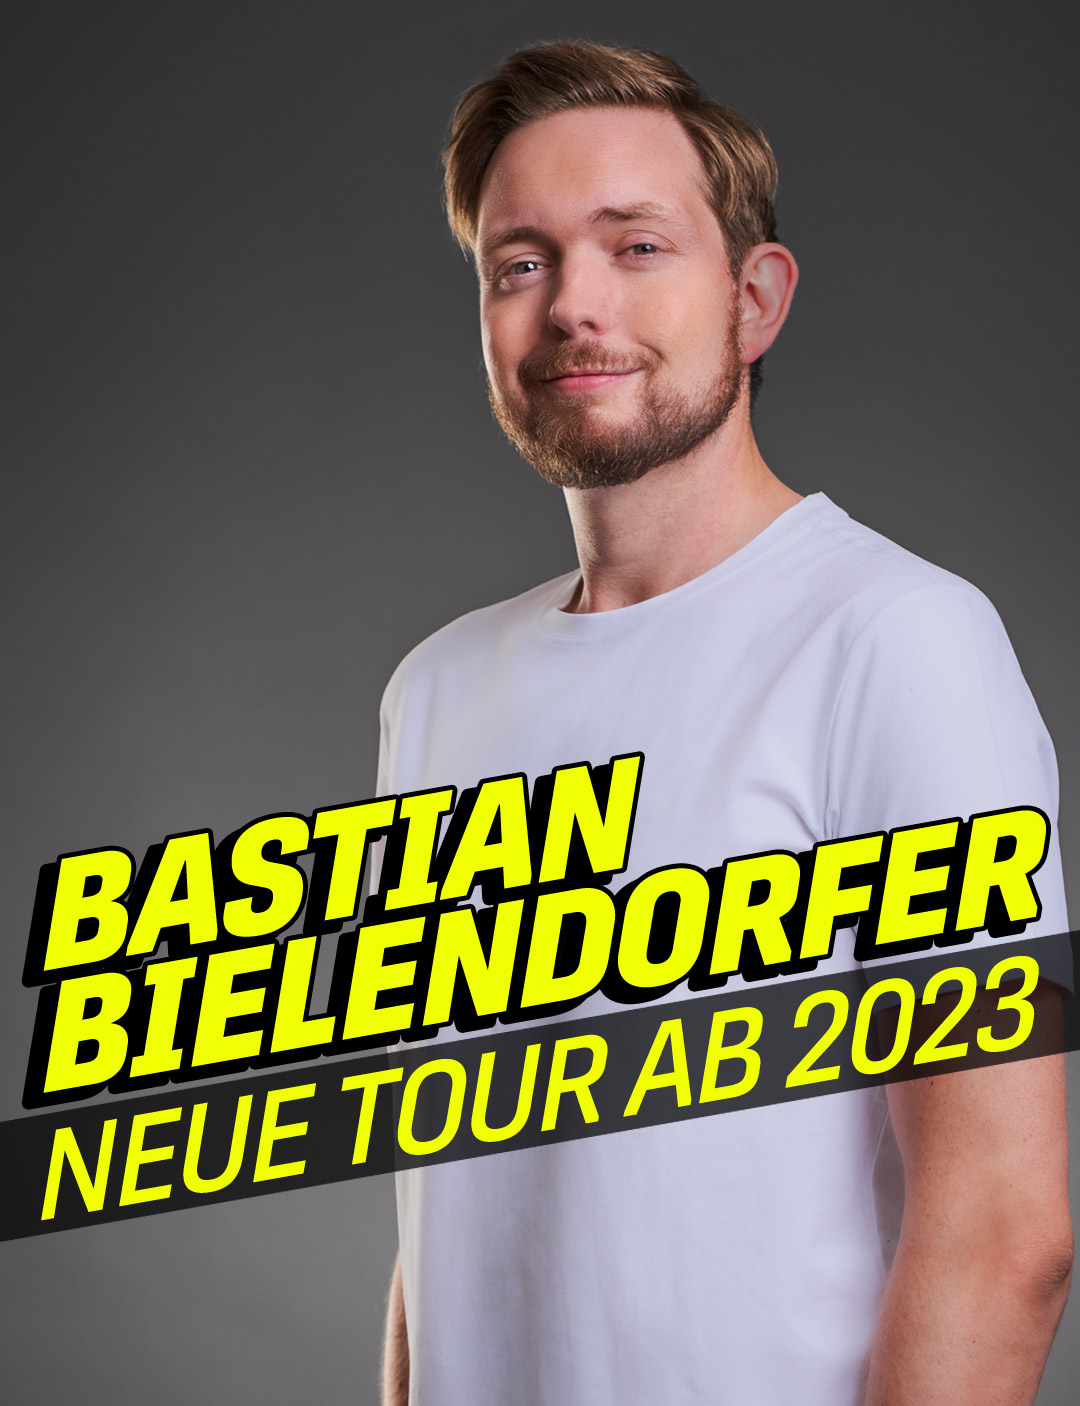 Bastian Bielendorfer – Lustig, aber wahr!